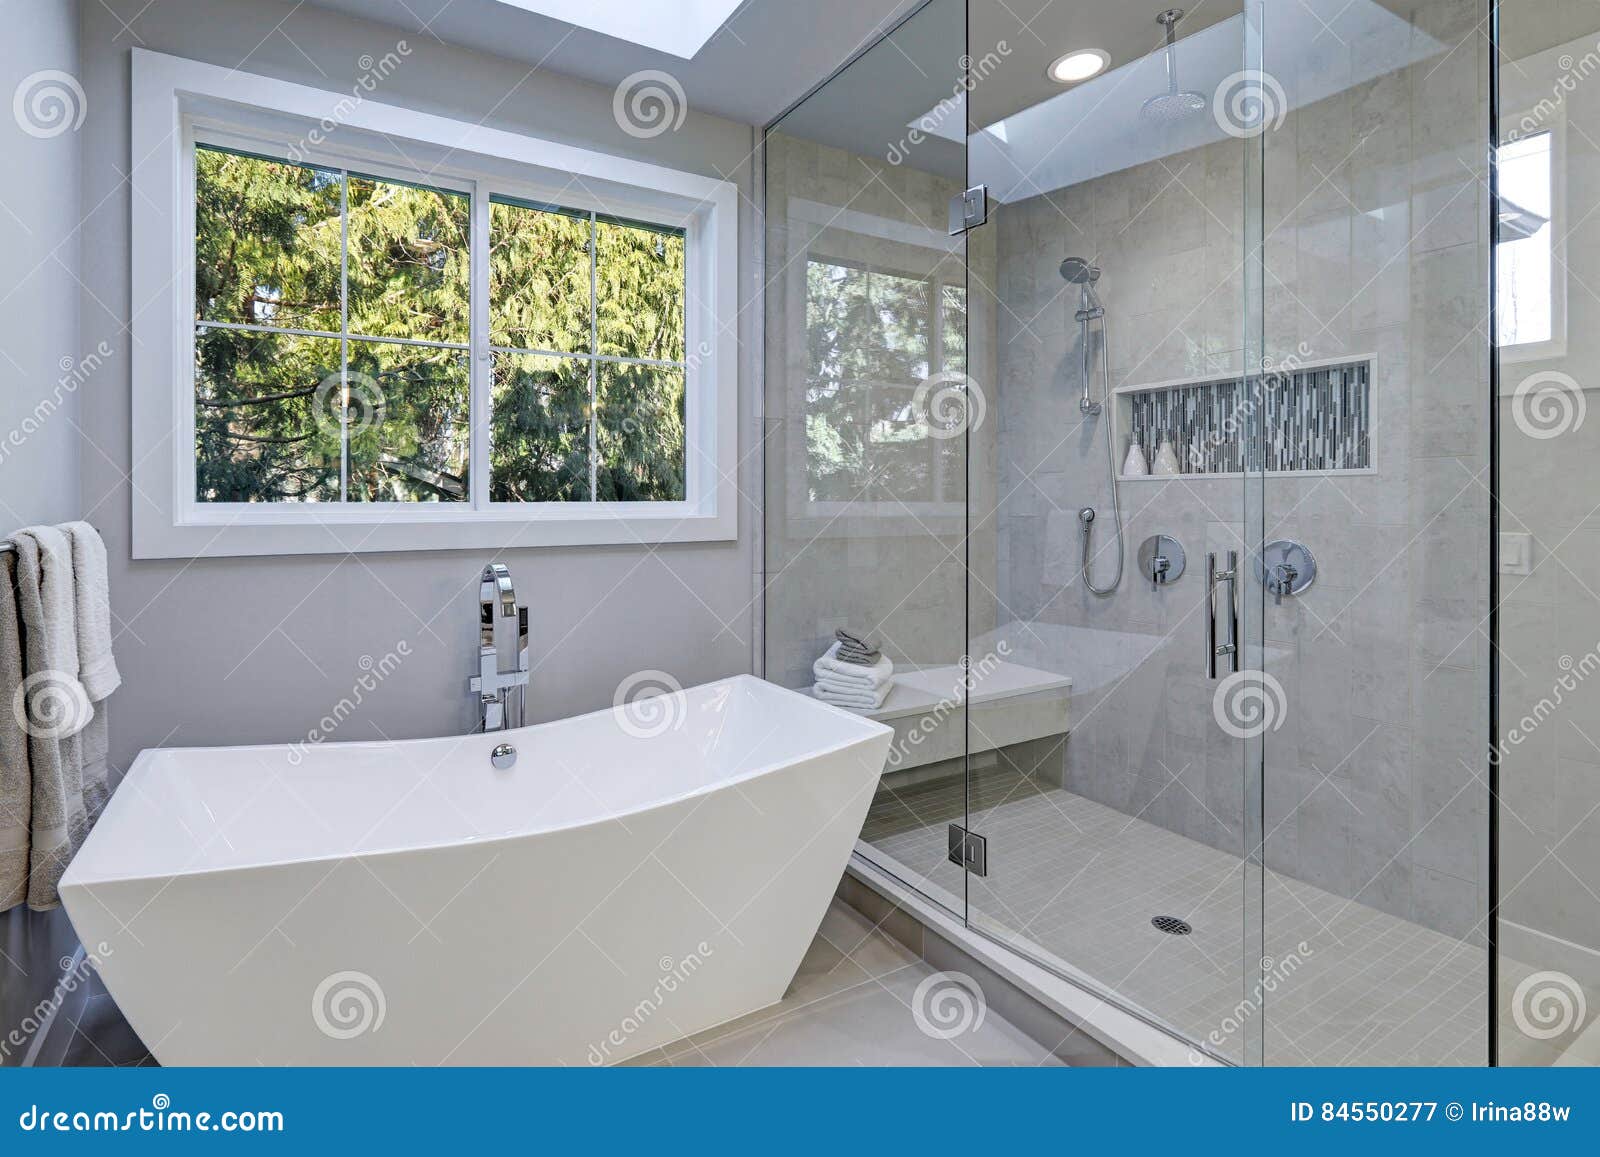 Cuarto de baño con techo abovedado y ducha de cristal: fotografía de stock  © iriana88w #54420635